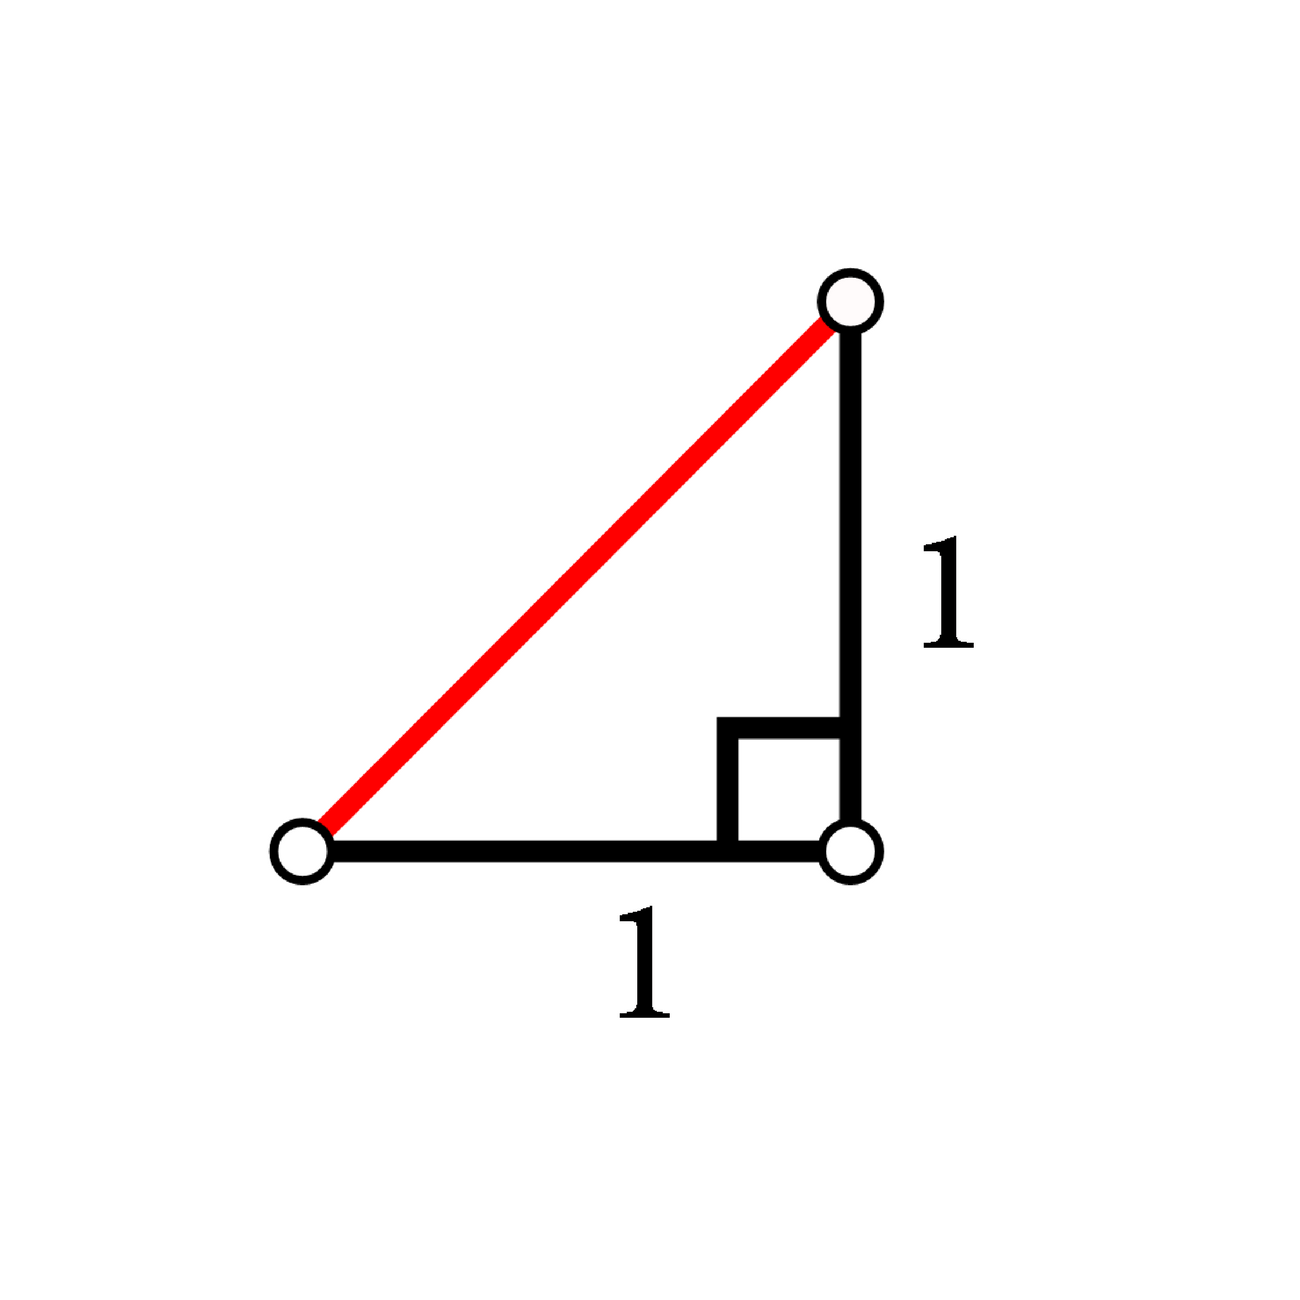 Na slici je prikazan pravokutan trokut s katetama duljine 1 jedince.